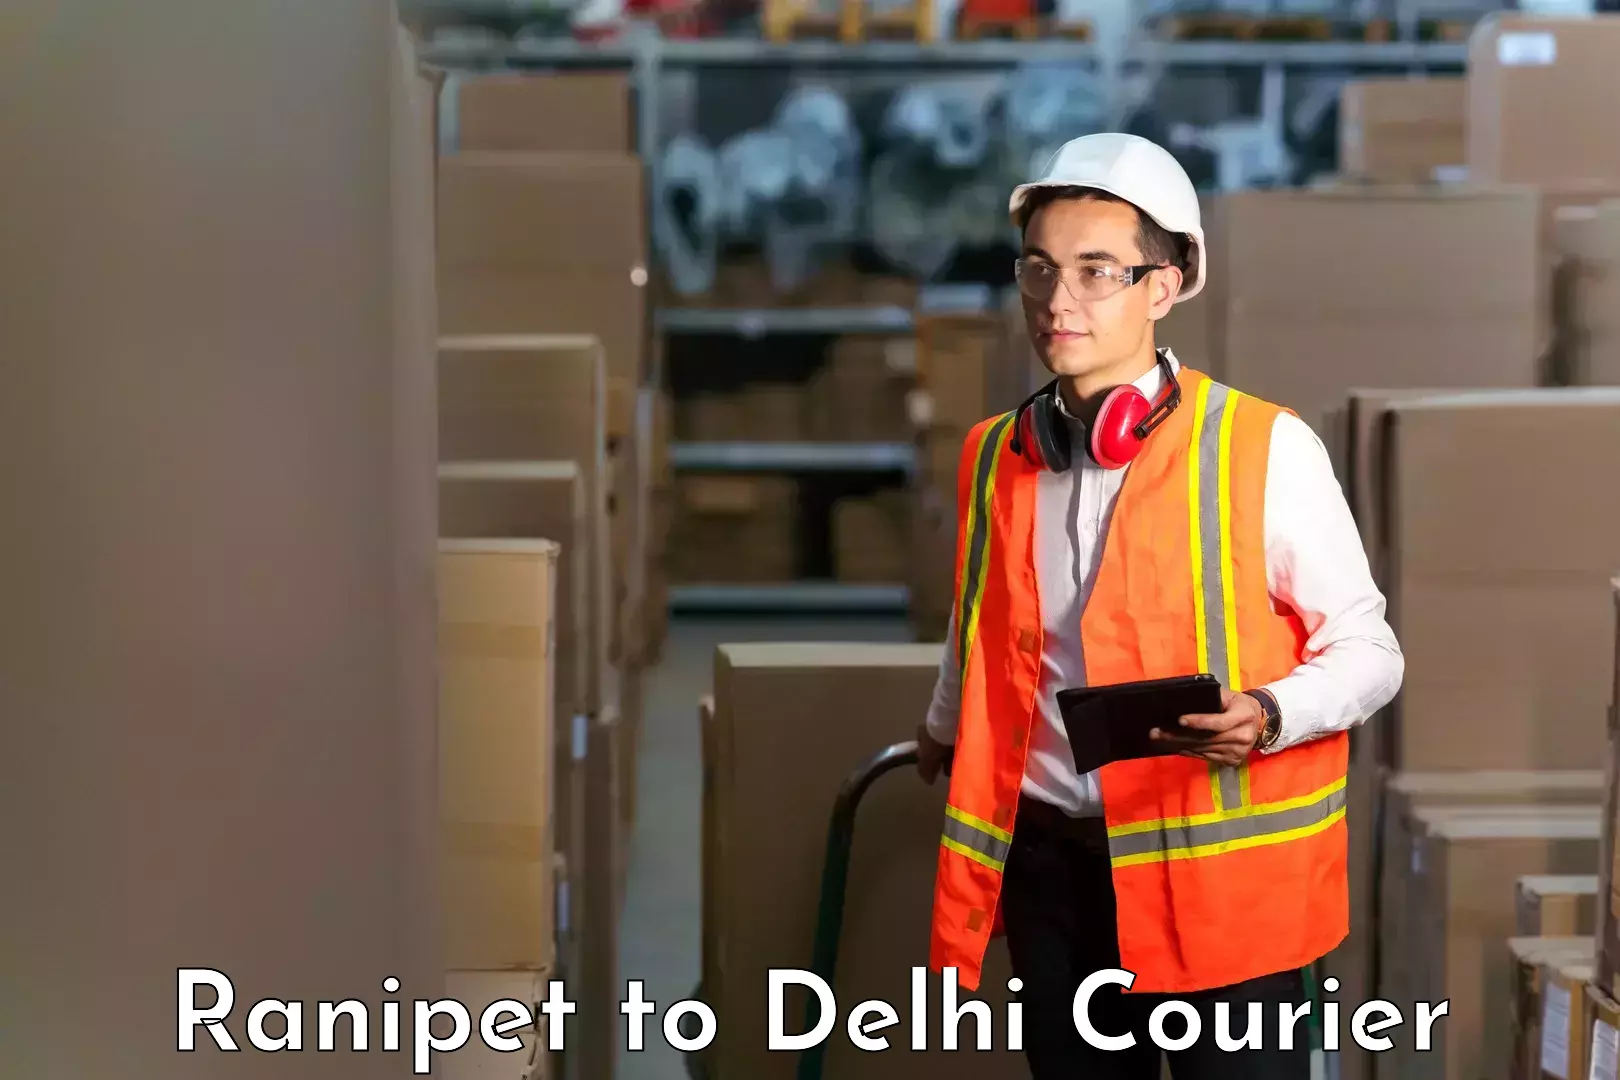 Courier service comparison Ranipet to Delhi